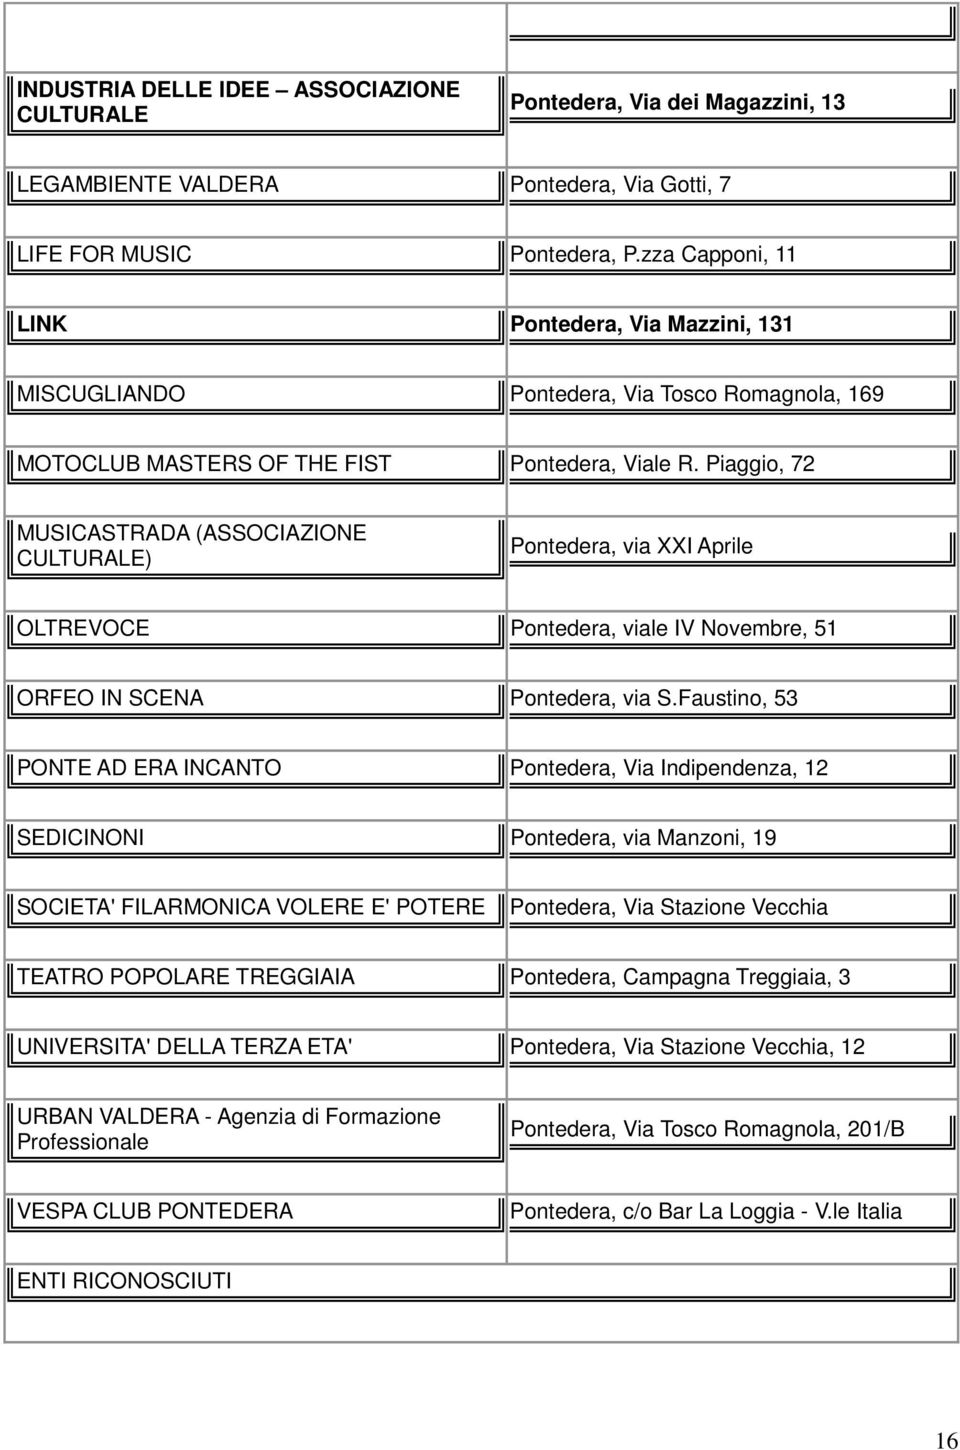 Piaggio, 72 MUSICASTRADA (ASSOCIAZIONE CULTURALE) Pontedera, via XXI Aprile OLTREVOCE Pontedera, viale IV Novembre, 51 ORFEO IN SCENA Pontedera, via S.